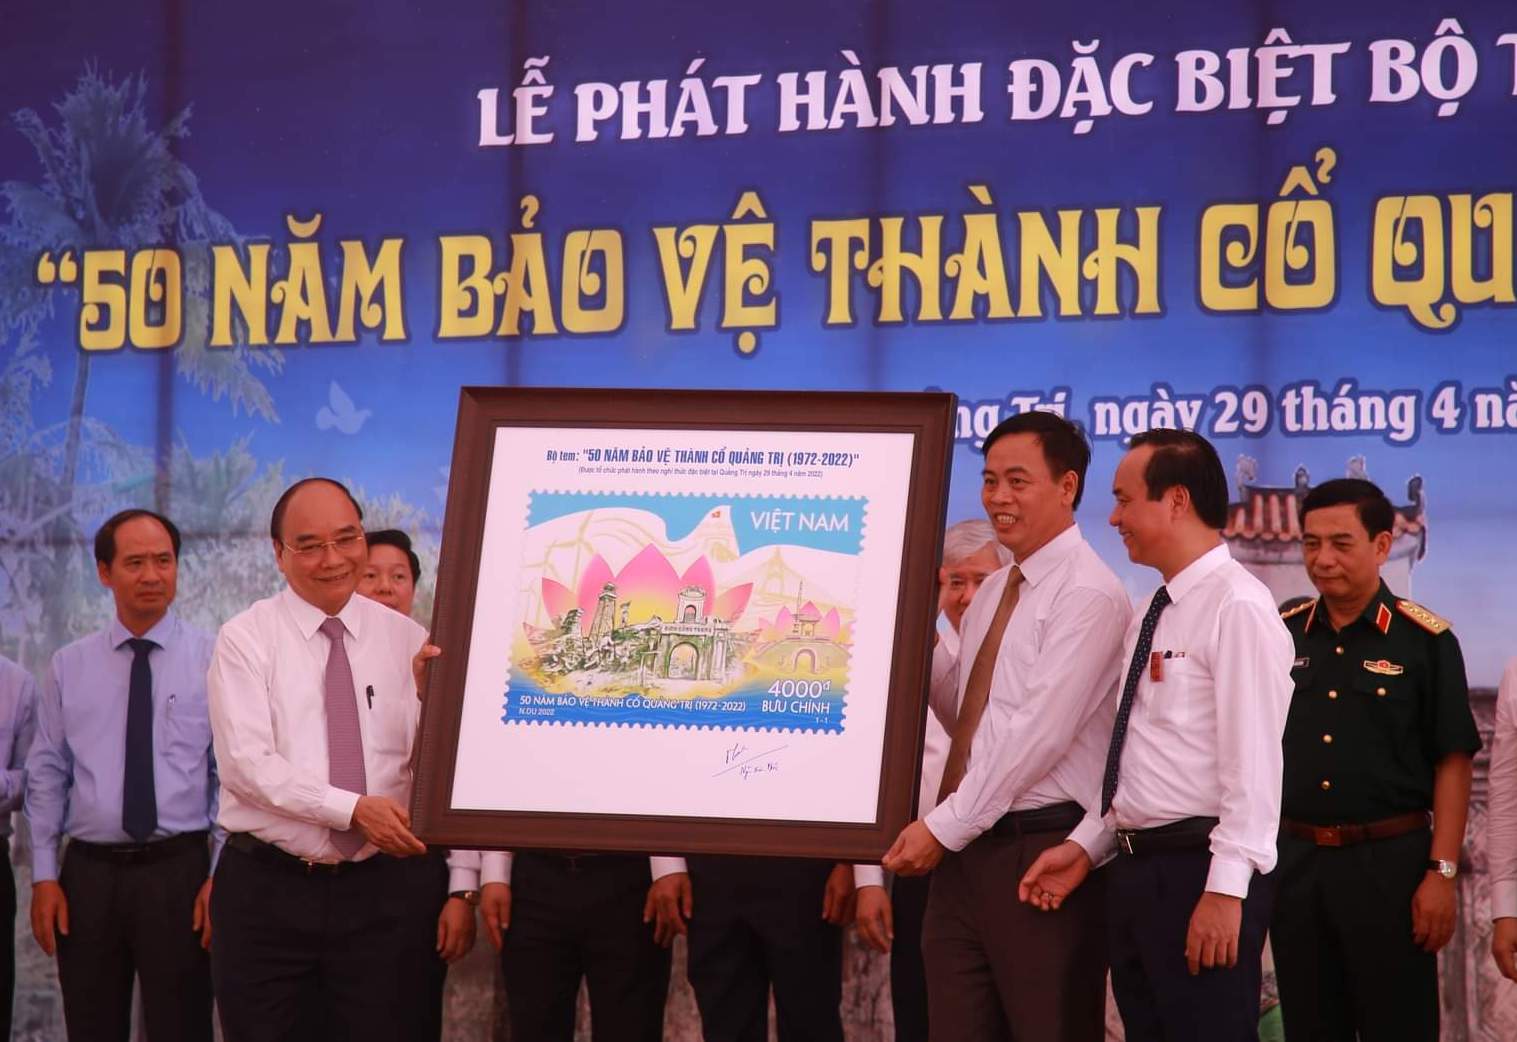 Chủ tịch nước ký phát hành tem đặc biệt 50 năm bảo vệ Thành cổ Quảng Trị - Ảnh 1.